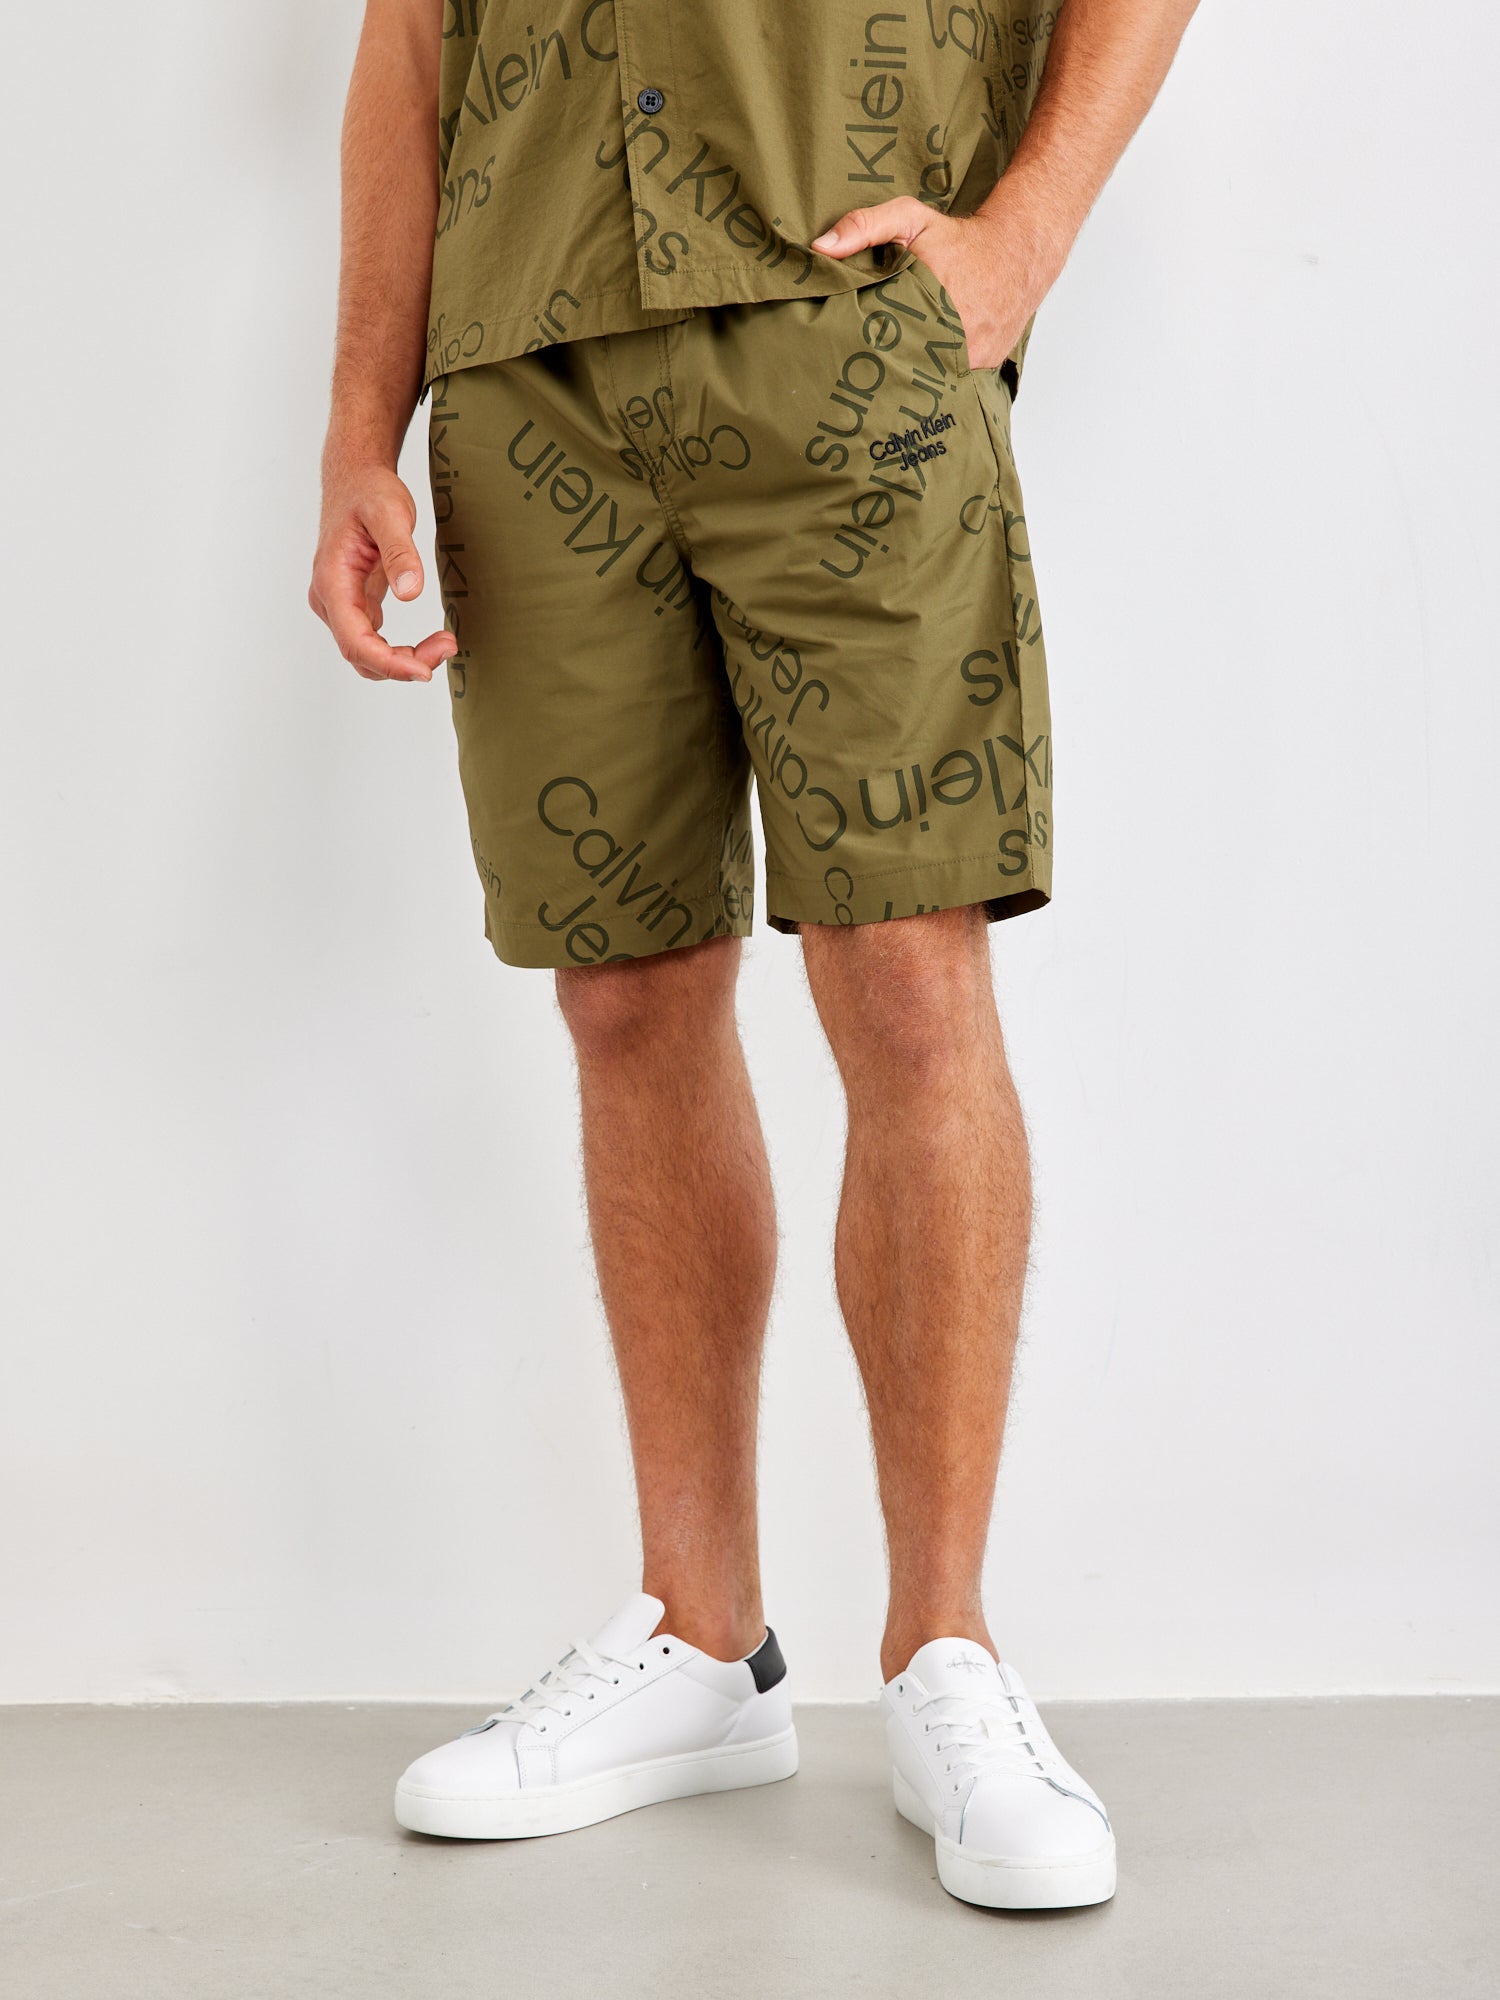 מכנסי ברמודה עם הדפסי לוגו- Ck|קלווין קליין